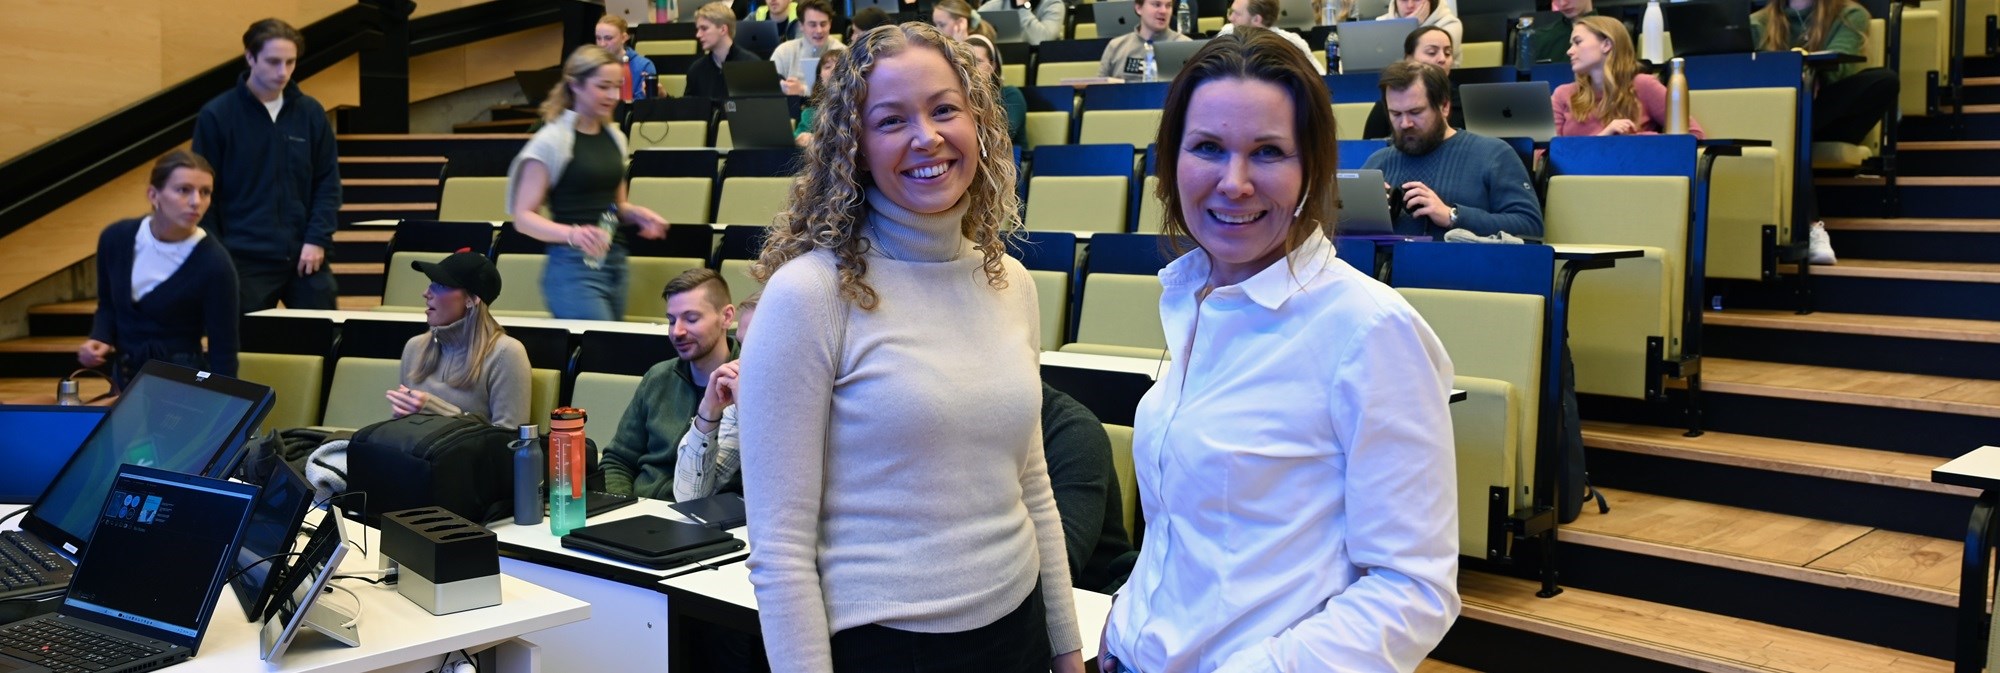 I februar var administrerende direktør i Tomra Textiles Vibeke Krohn sammen med NHH alumn Mari Sæther på NHH. De holdt gjesteforelesning om effektene av bærekraftutfordringene.  